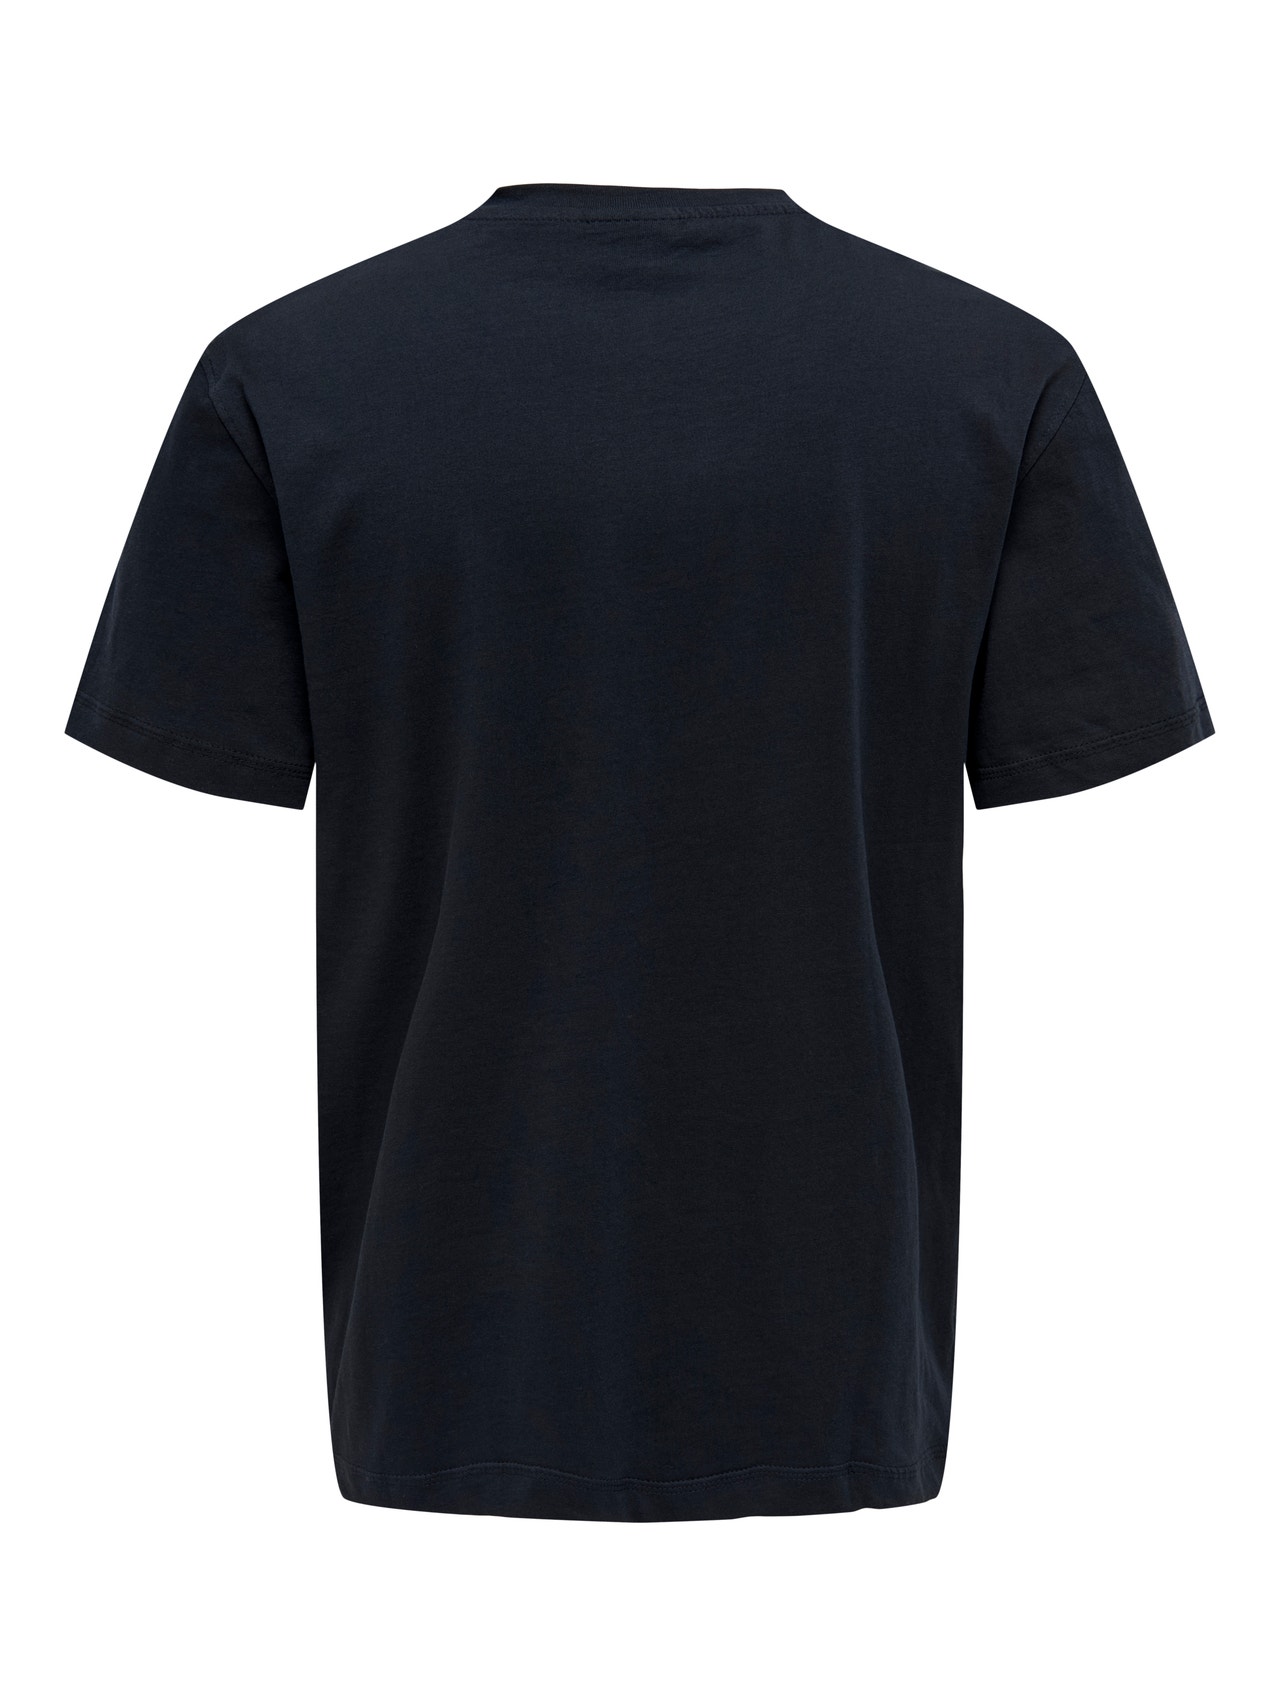 ONLY & SONS Normal geschnitten Rundhals T-Shirt -Dark Navy - 22025208